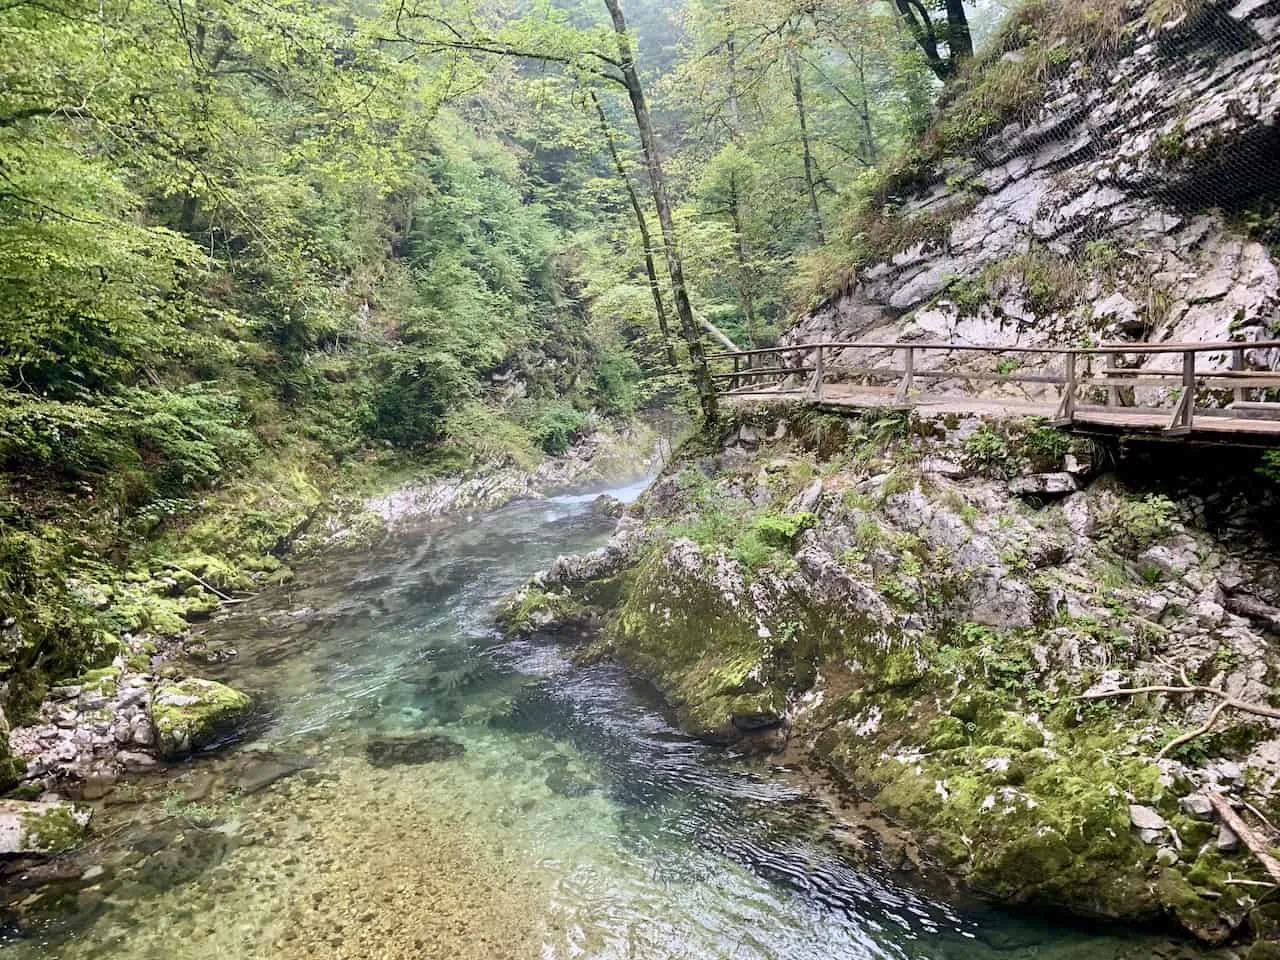 Radovna River Gorge